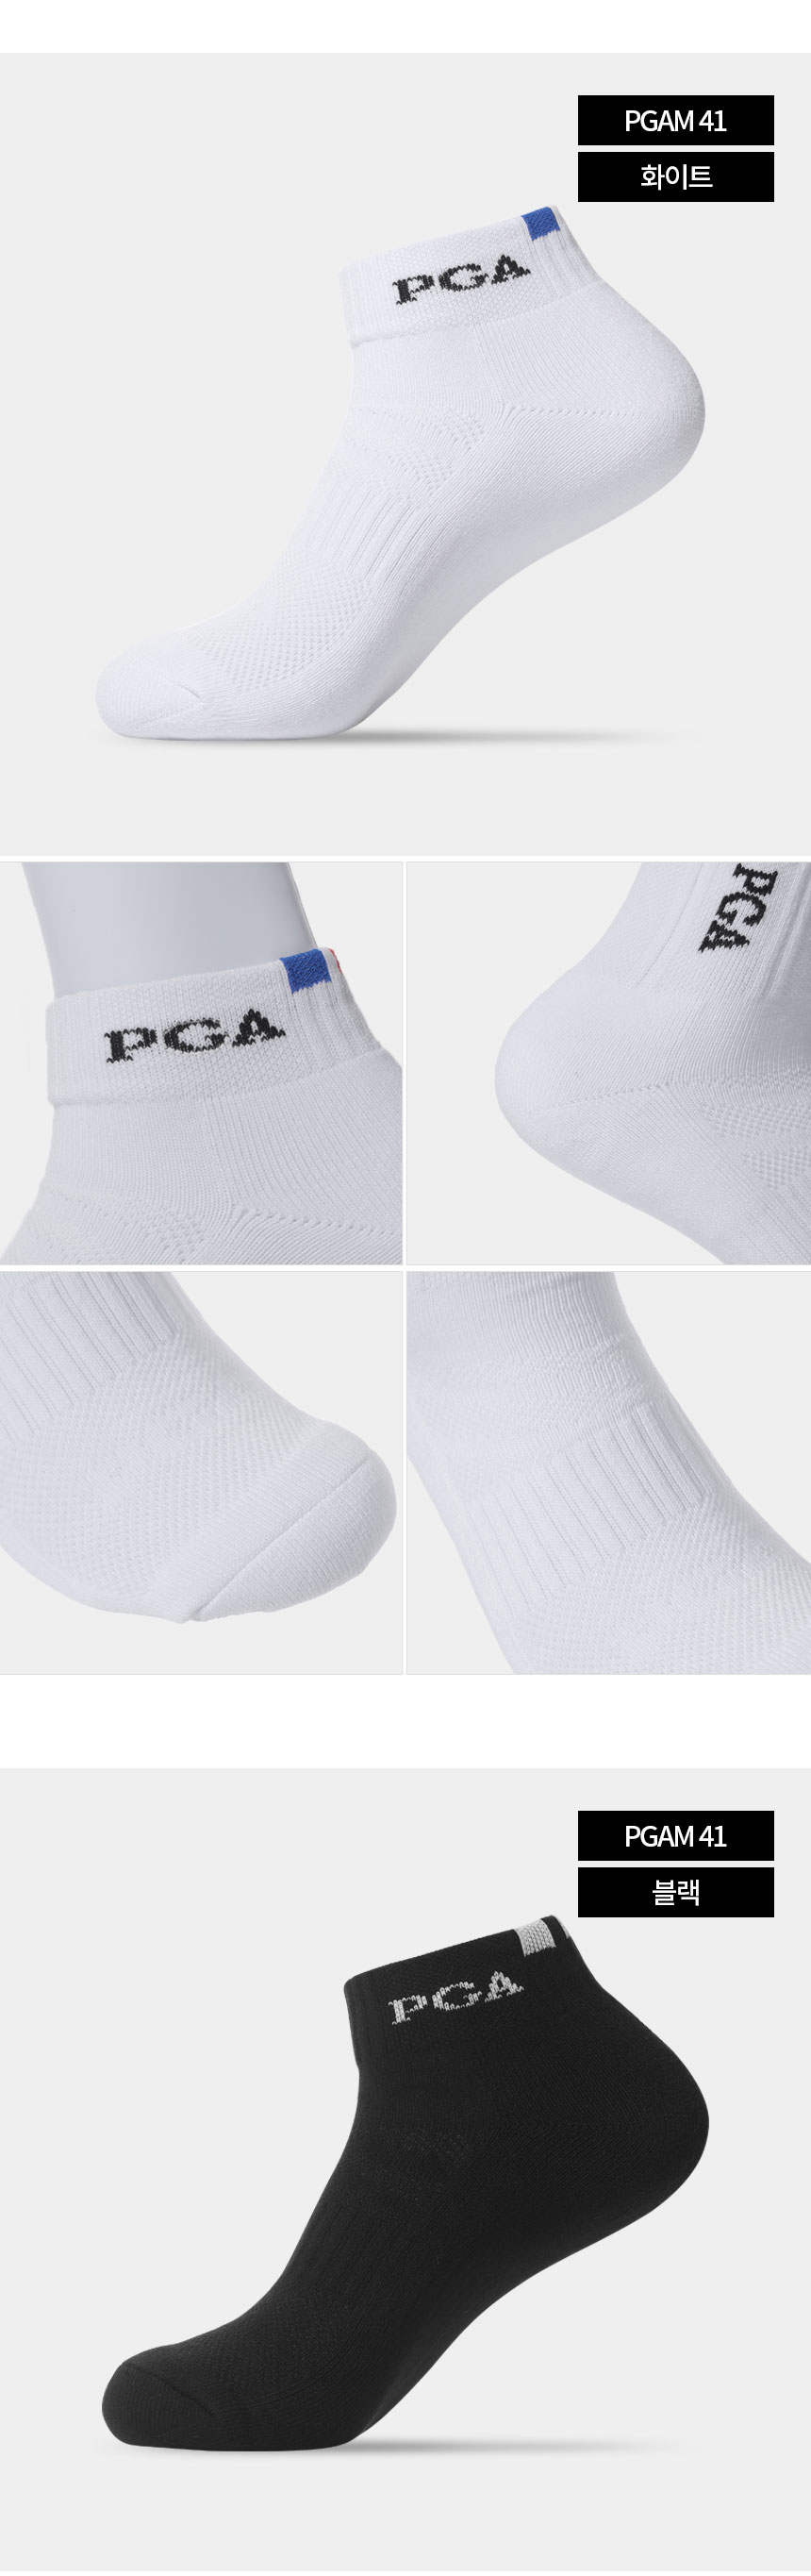 PGA_premium_cushion_short_sports_socks_PGAM41_22_07.jpg